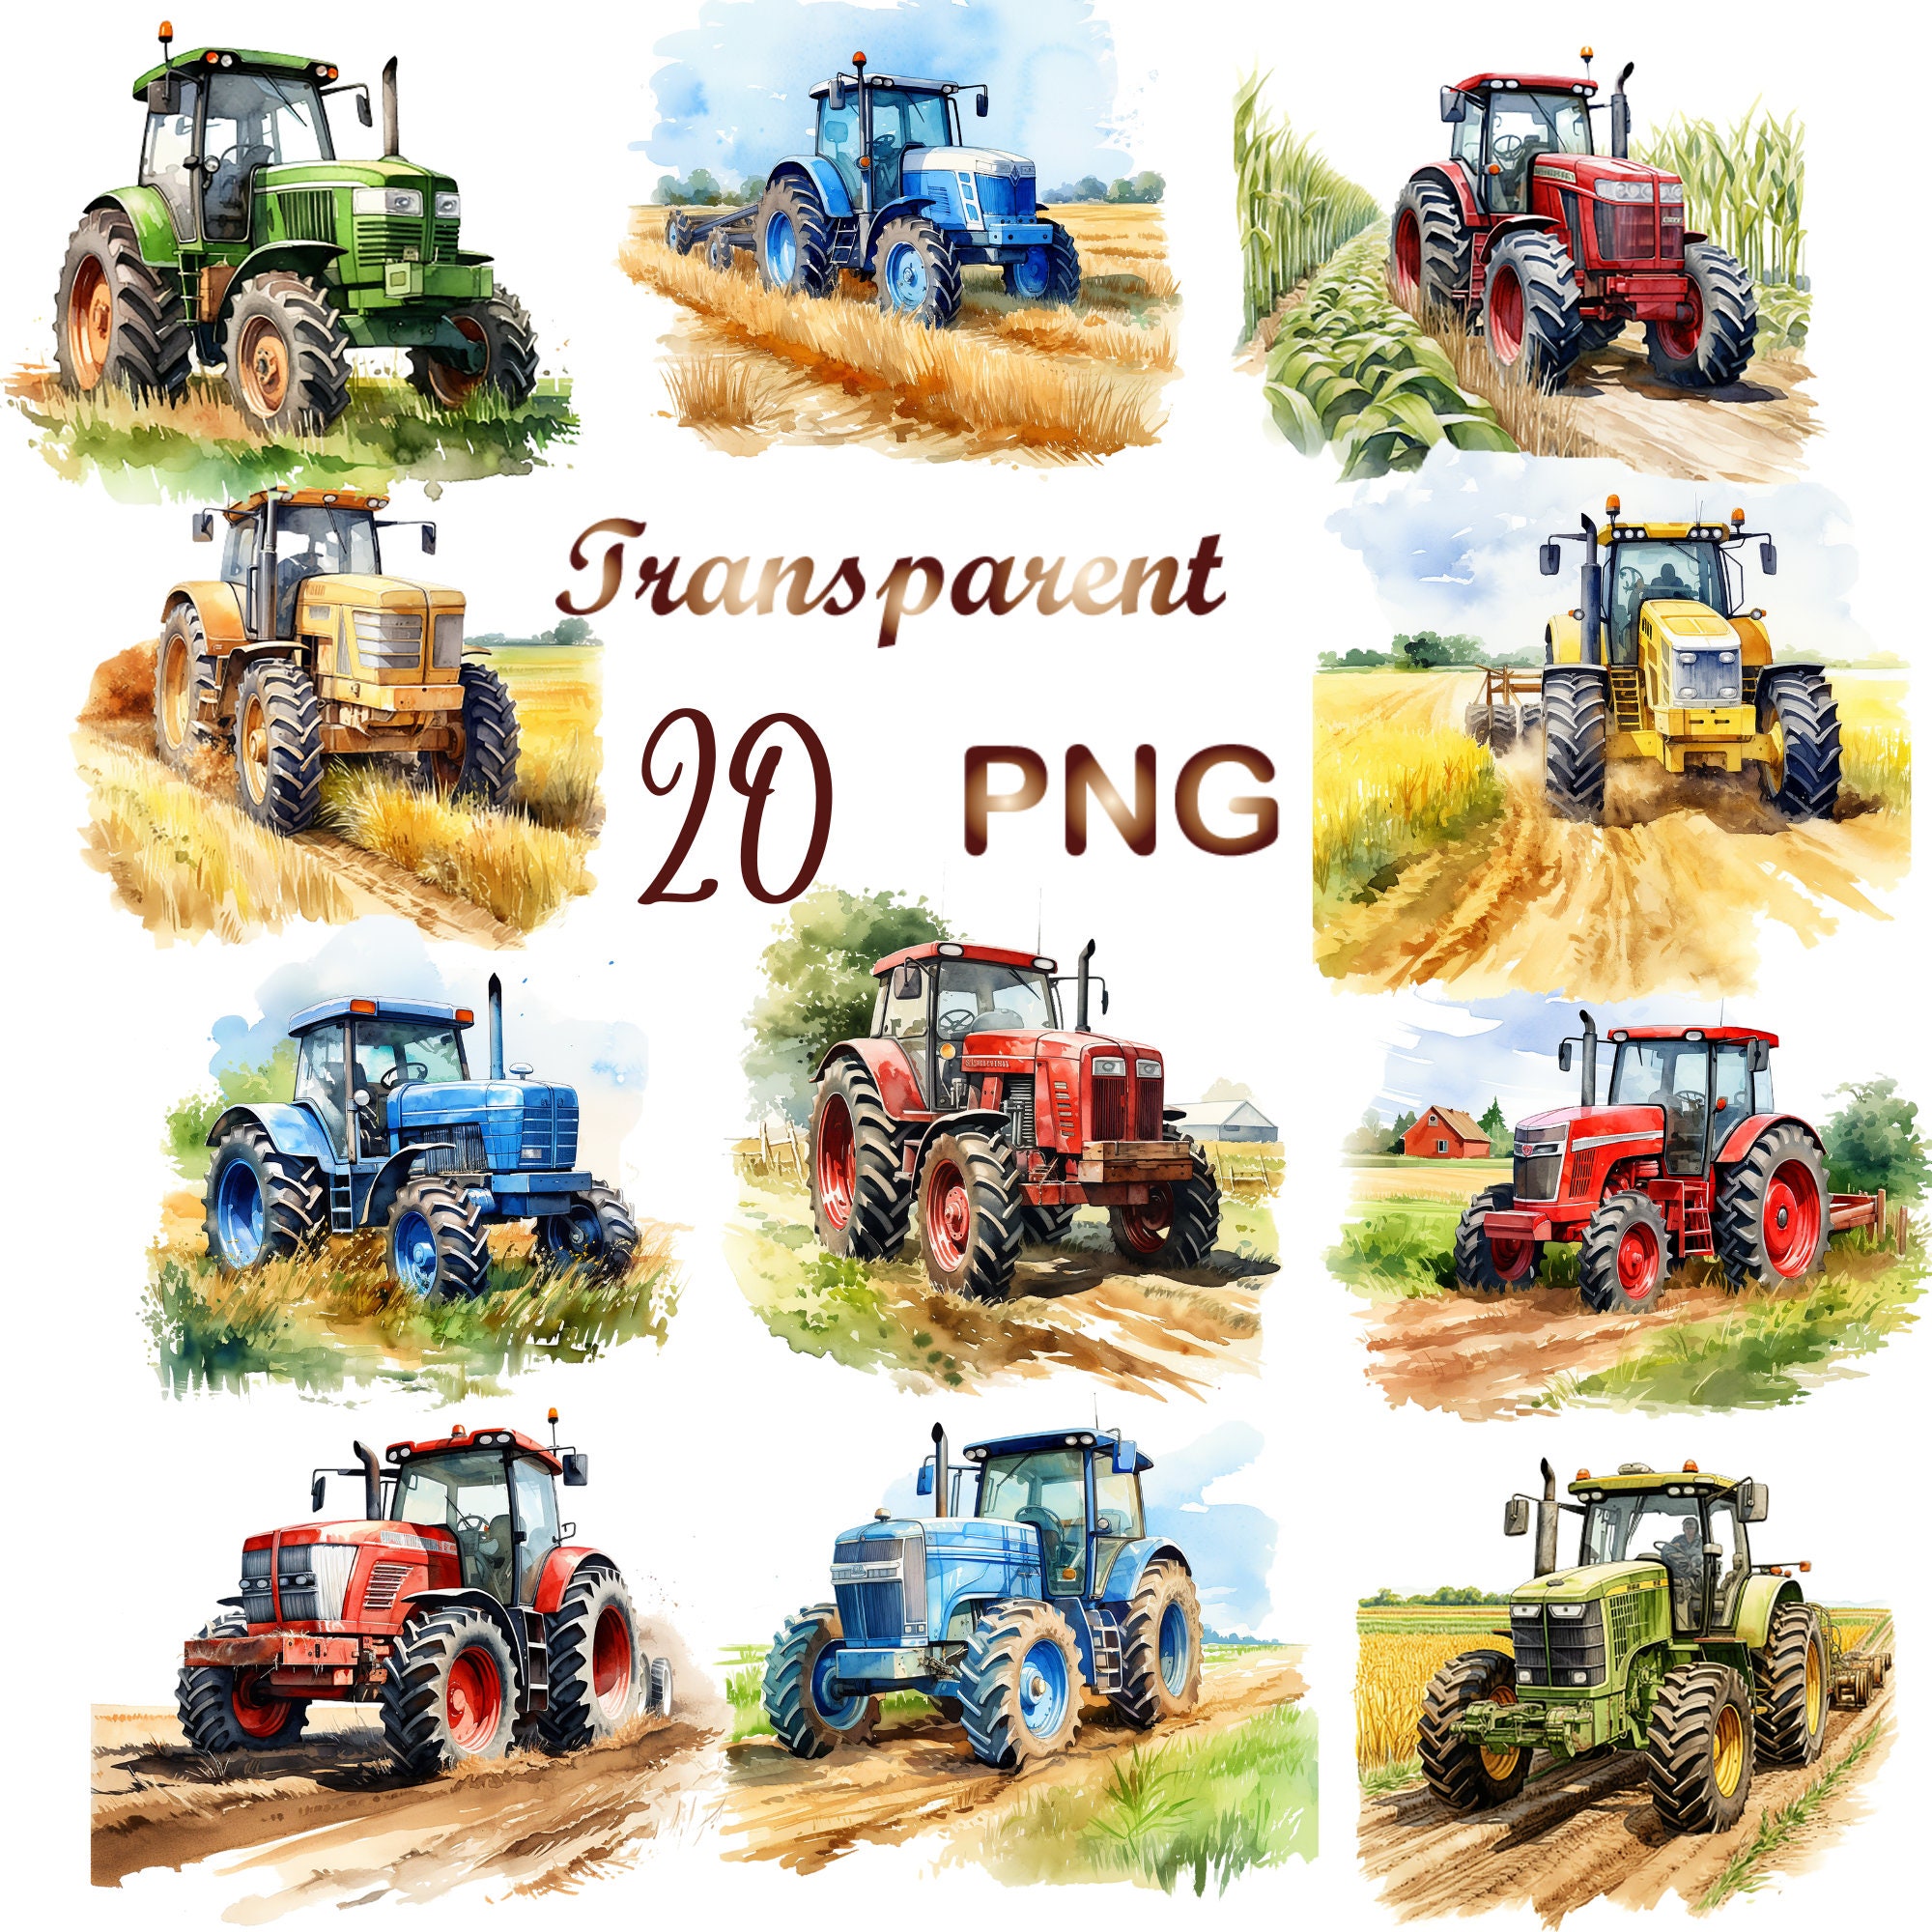 Der Perfekte Landwirt Leben - Traktor Zubehör' Männer Premium T